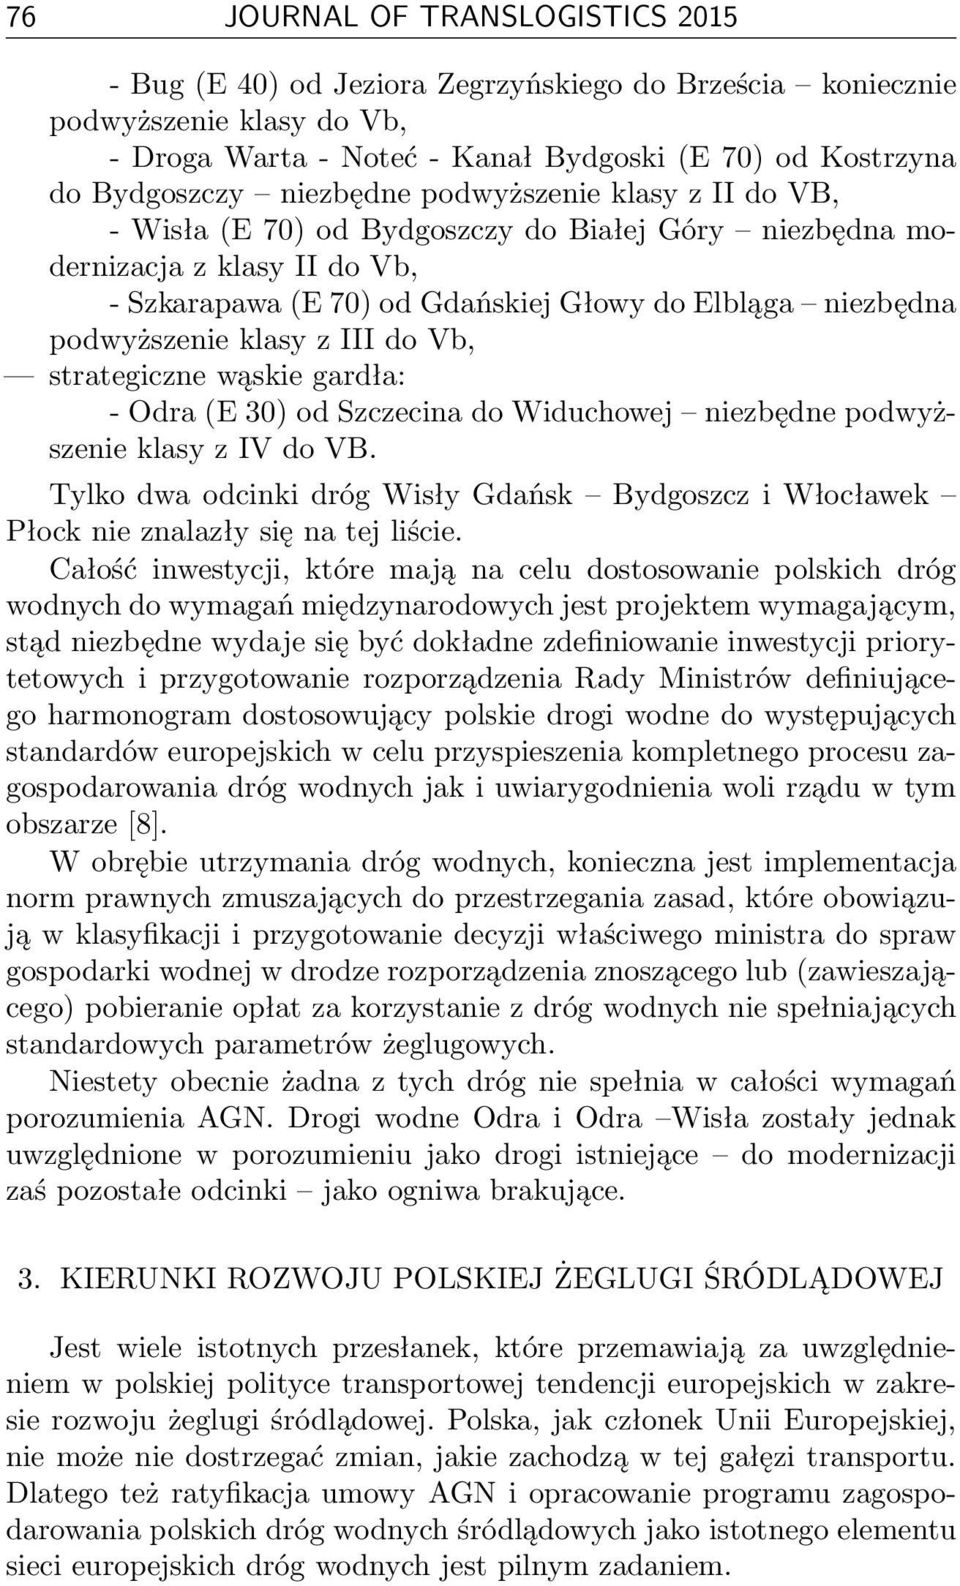 klasy z III do Vb, strategiczne wąskie gardła: - Odra (E 30) od Szczecina do Widuchowej niezbędne podwyższenie klasy z IV do VB.